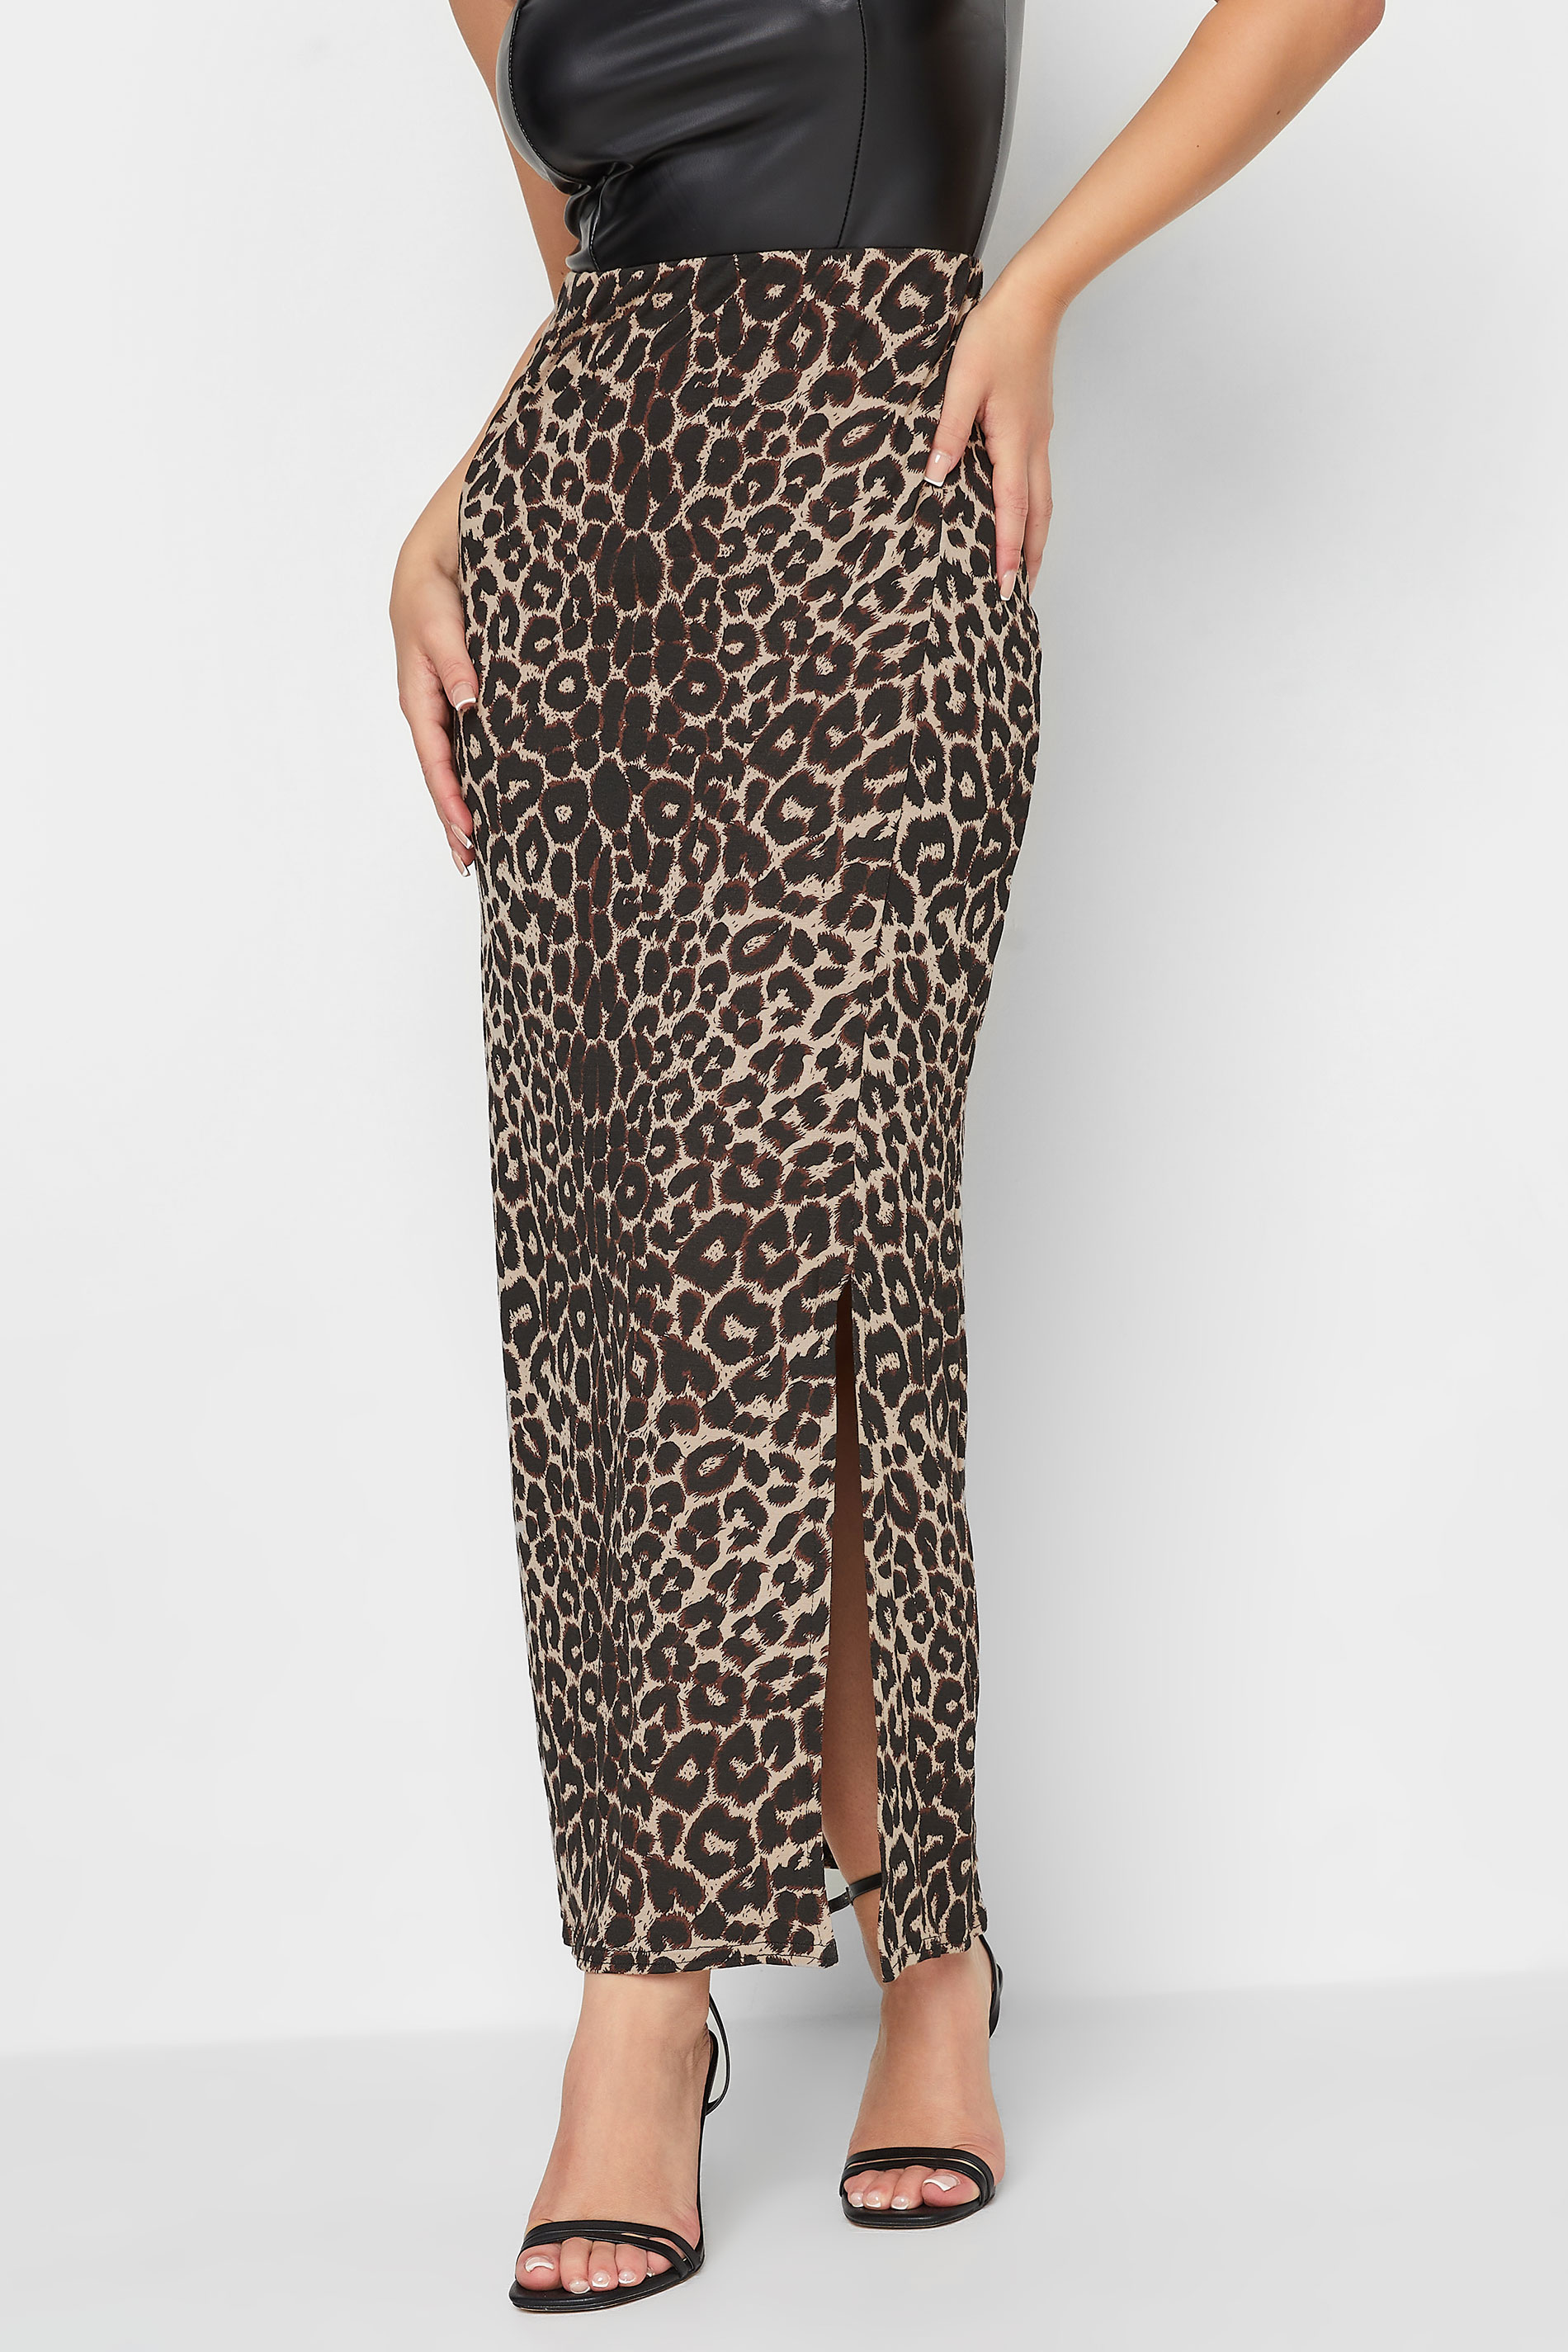 PixieGirl Brown Leopard Print Maxi Skirt | PixieGirl 1